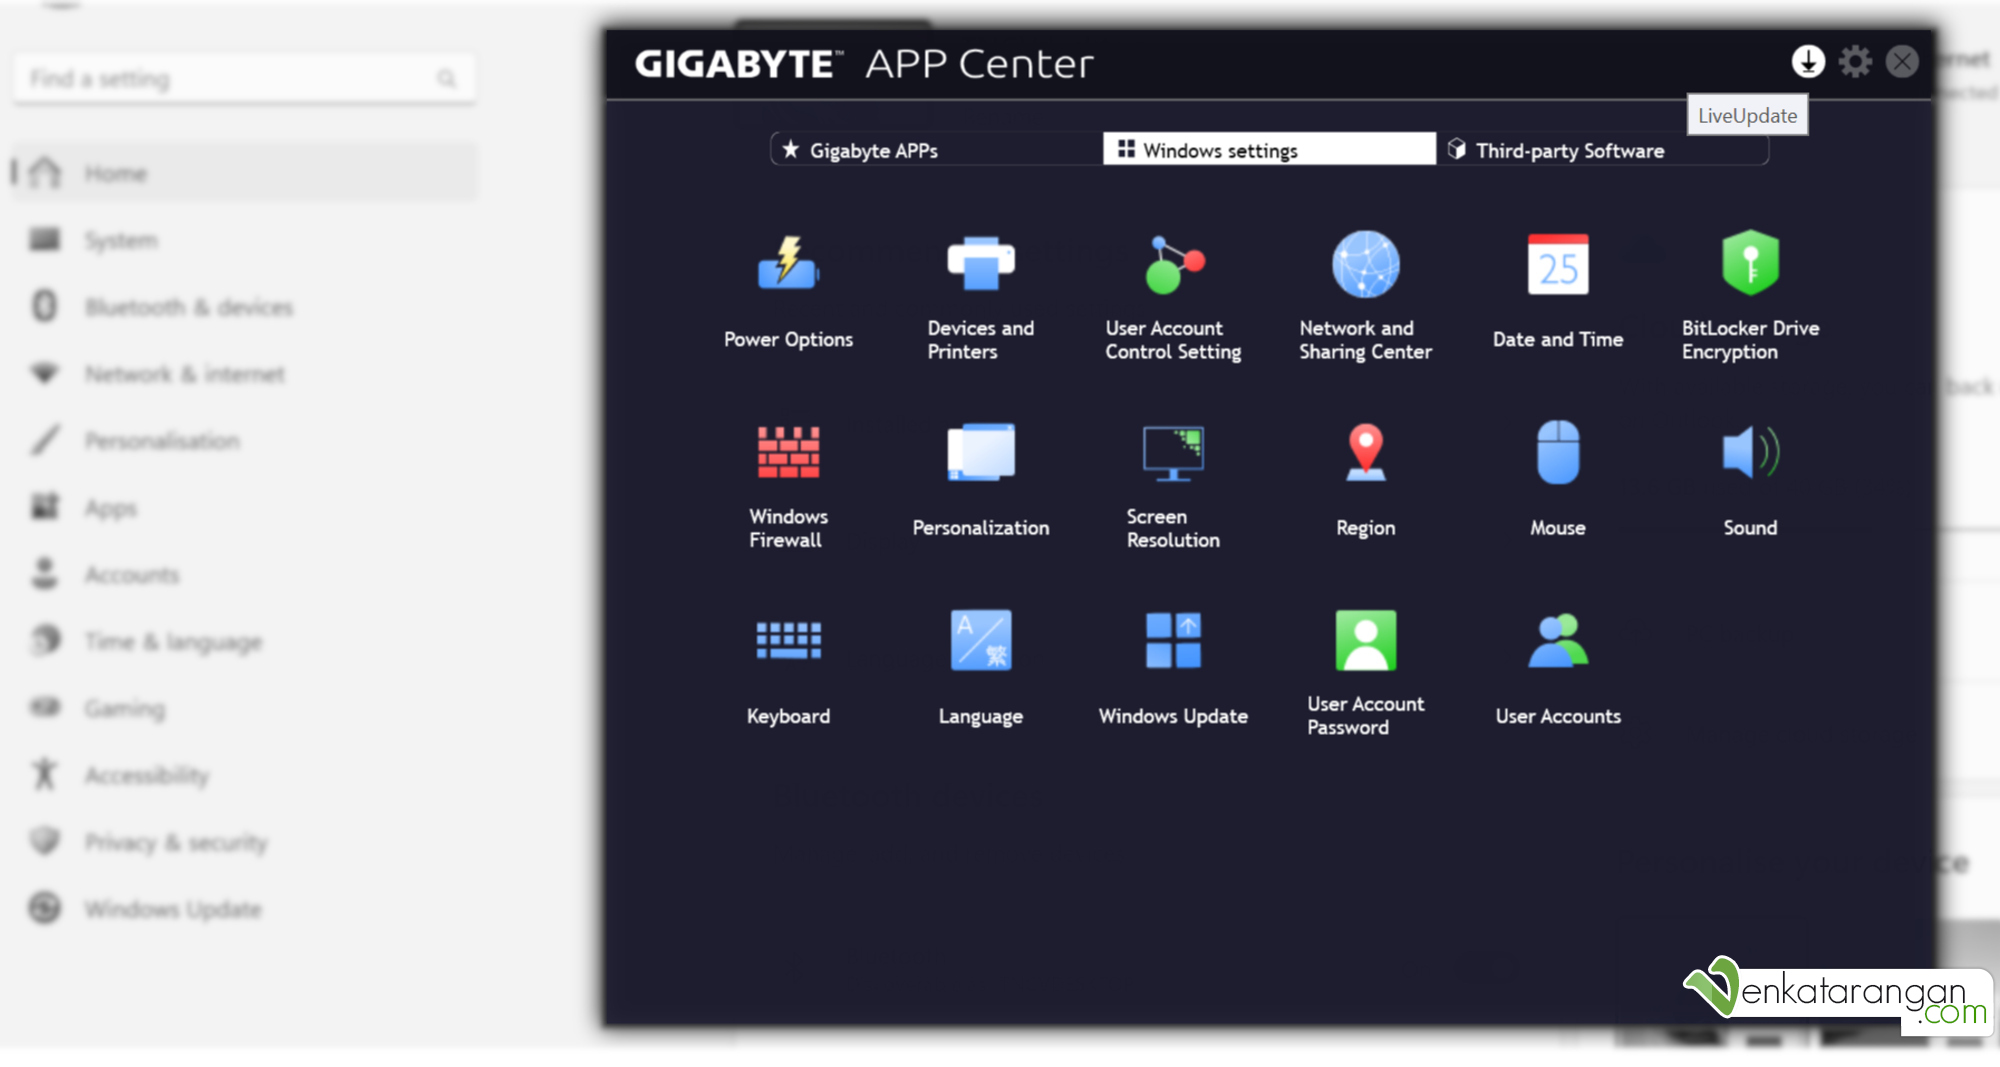 Gigabyte App Center - Motherboard Utility for Windows